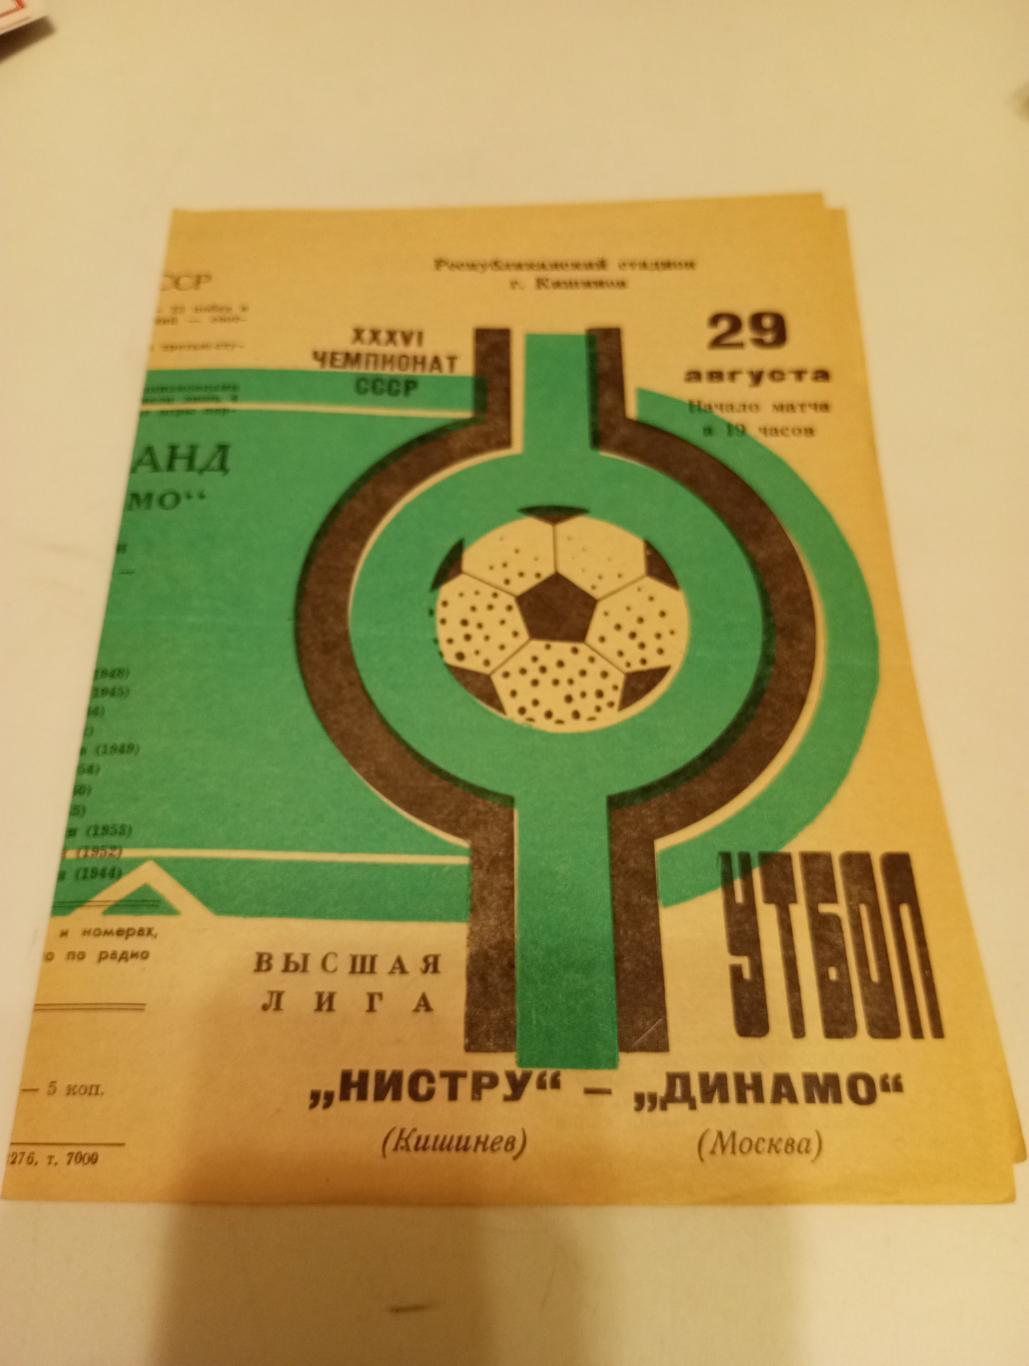 Нистру (Кишинёв) - Динамо( Москва). 1974.